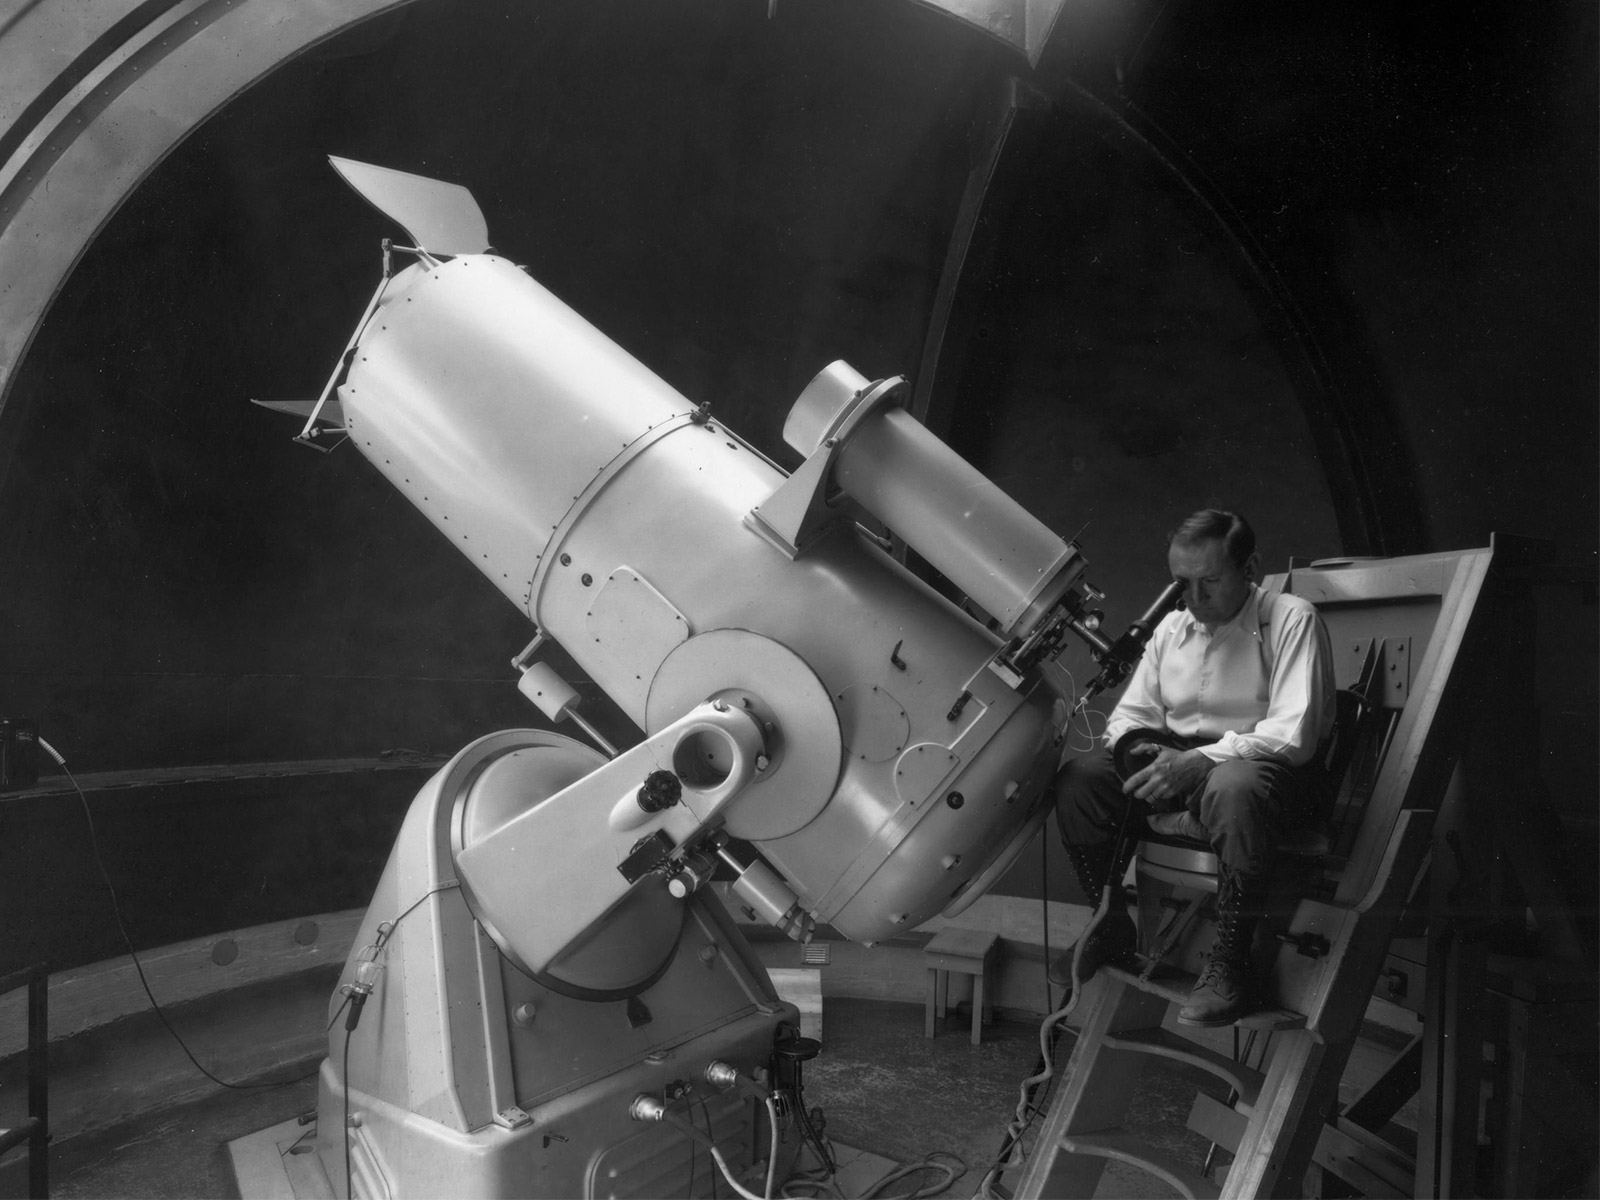 Фриц Цвикки наблюдает за Вселенной через совершенно новый на тот момент телескоп Шмидта, 1936 г.